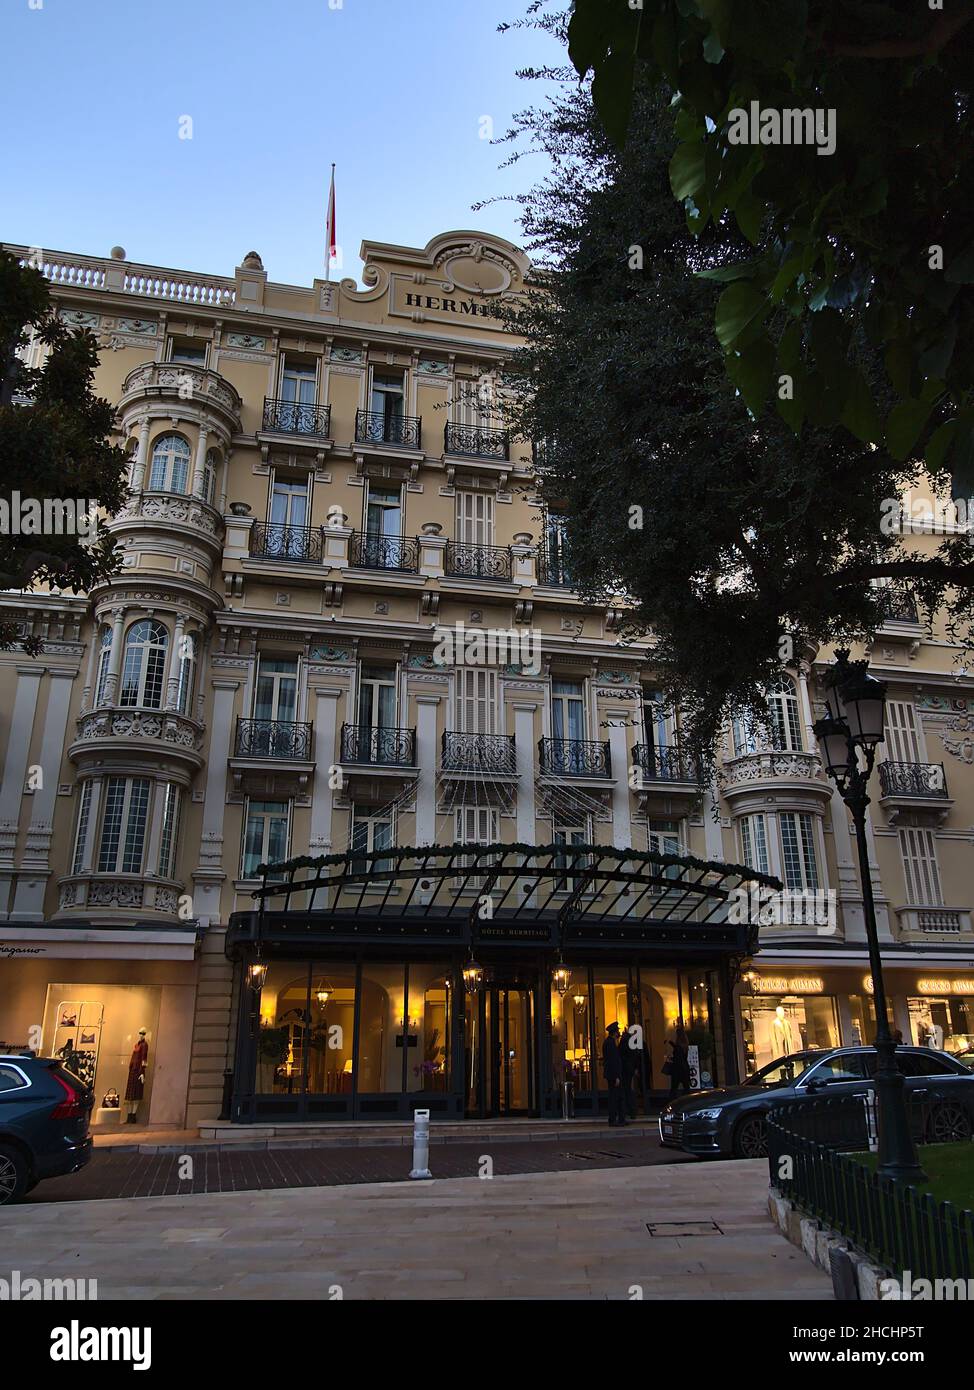 Vista frontale dell'ingresso di una sistemazione storica di lusso Hotel Hermitage nel quartiere di Monte Carlo in serata nel Principato di Monaco. Foto Stock